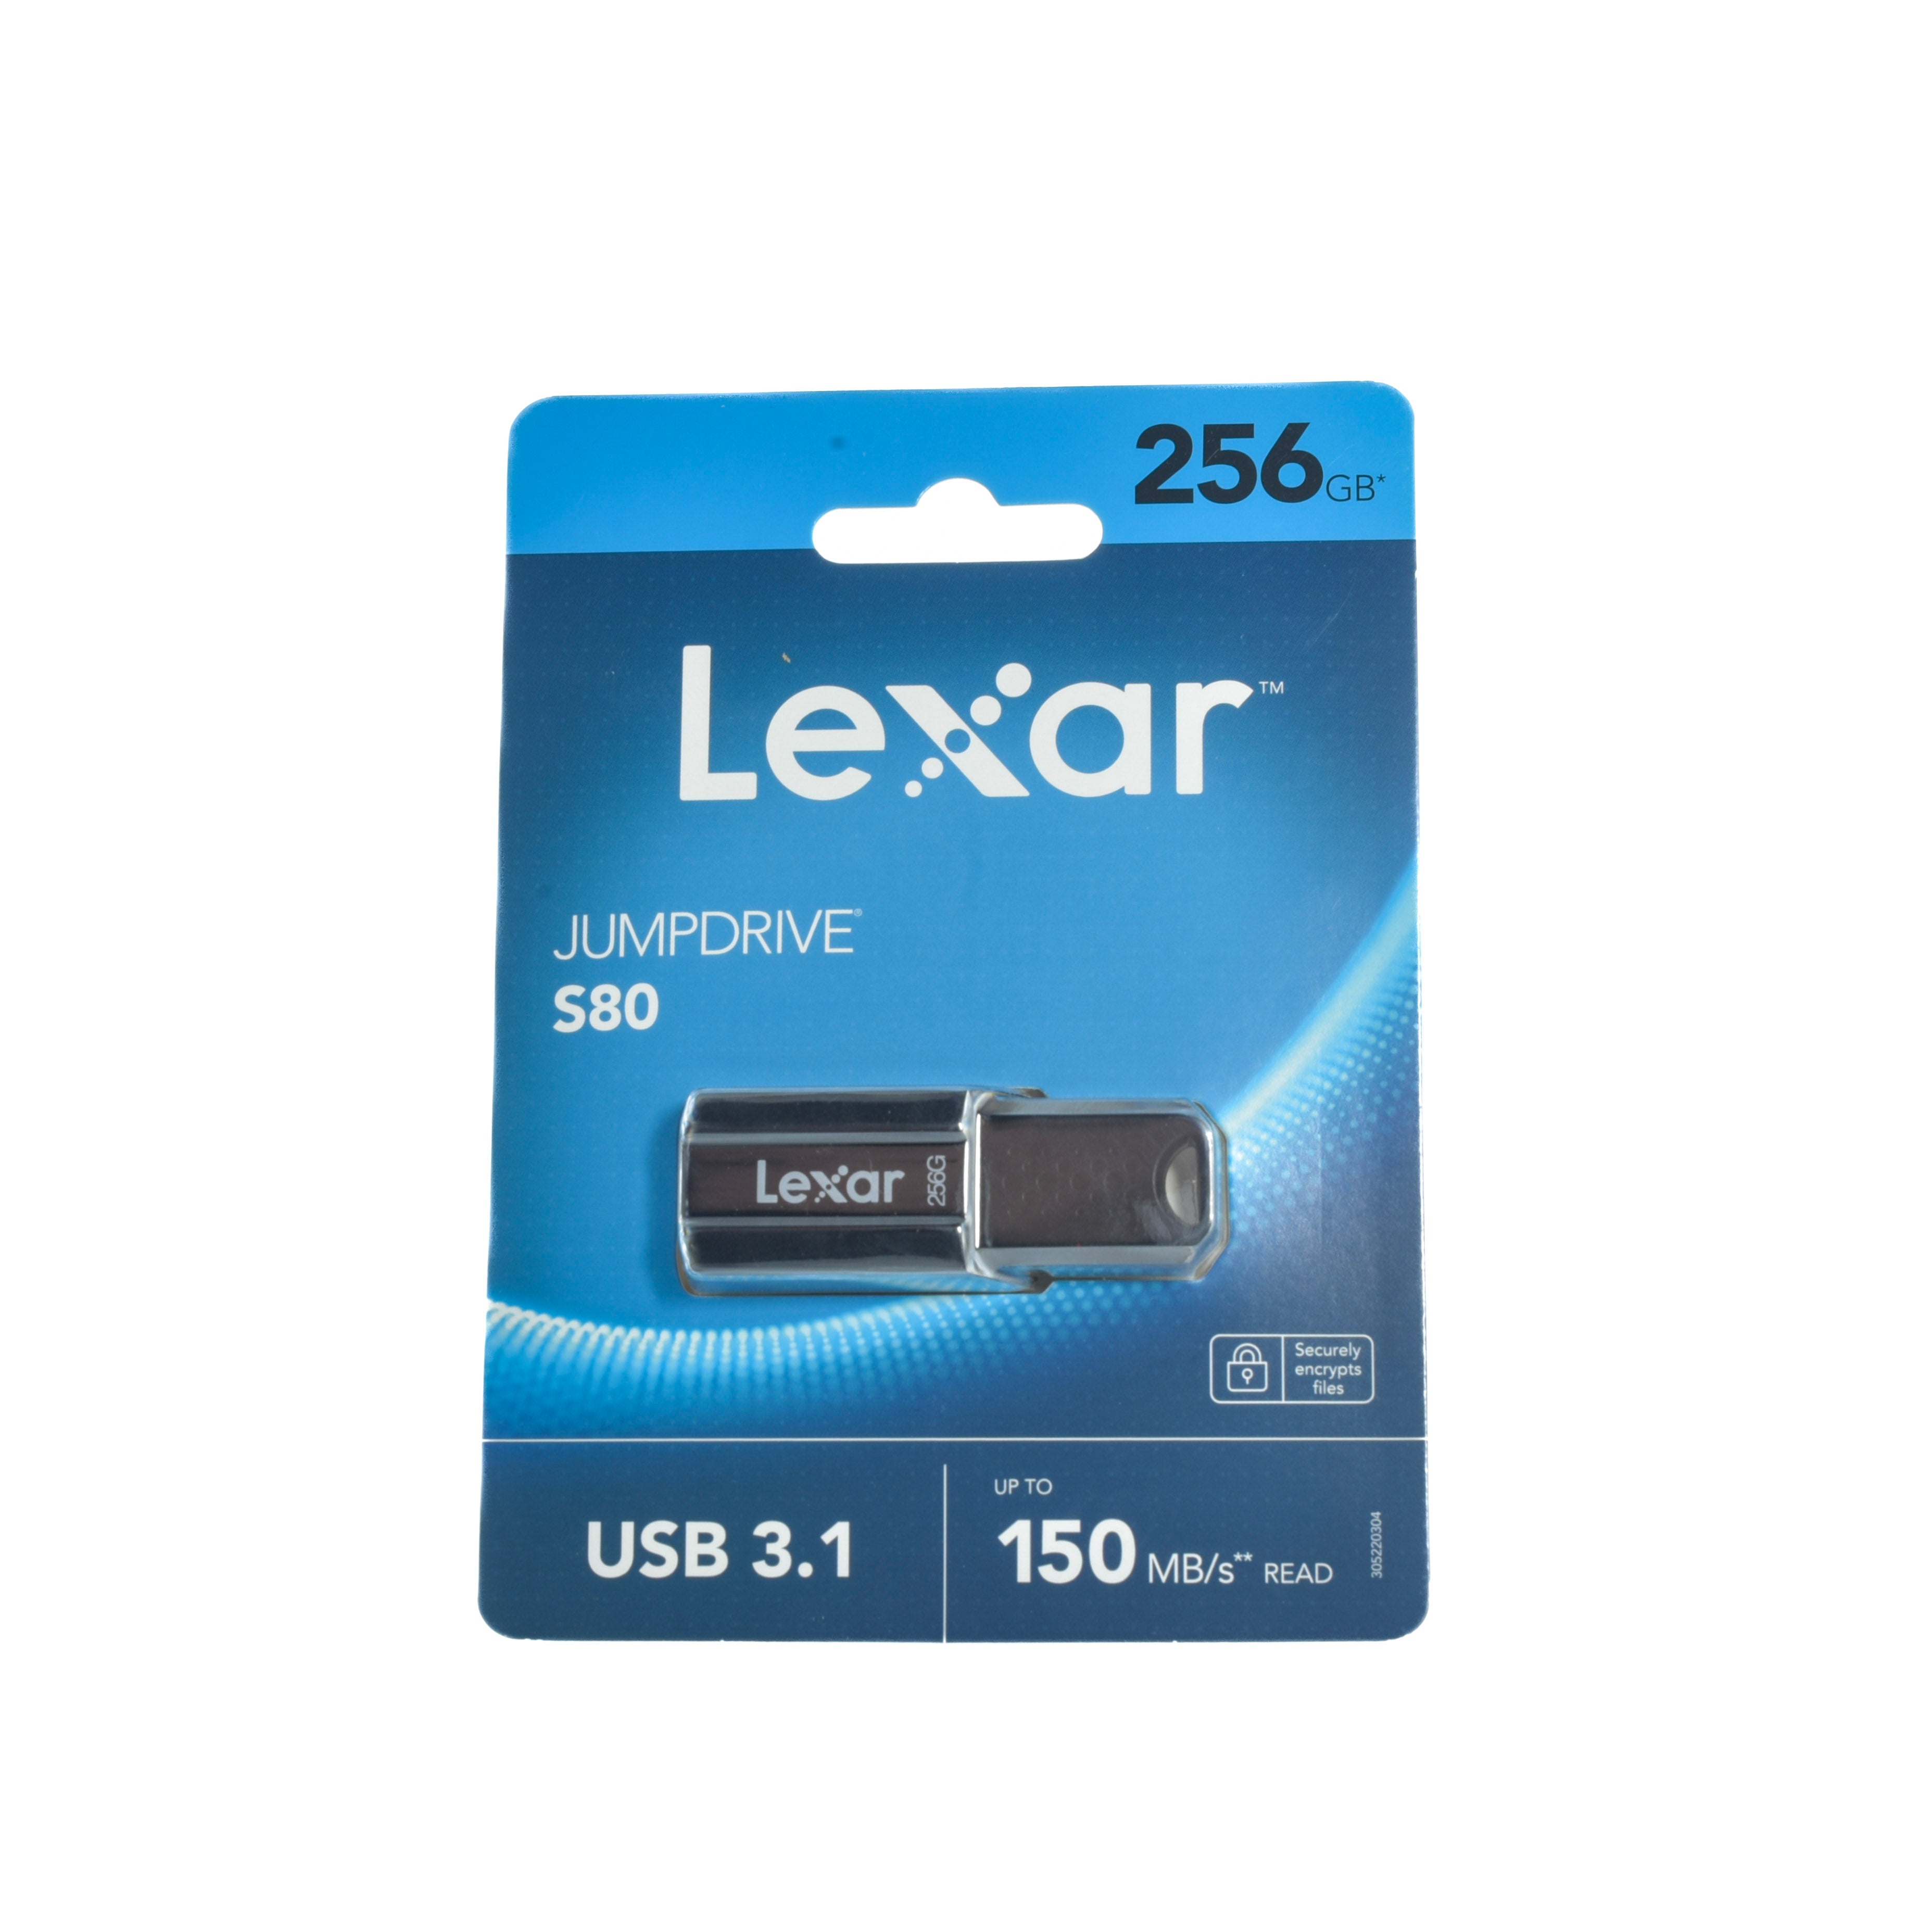 Lexar Jumpdrive S80 256 GB 3.1 Usb Stick